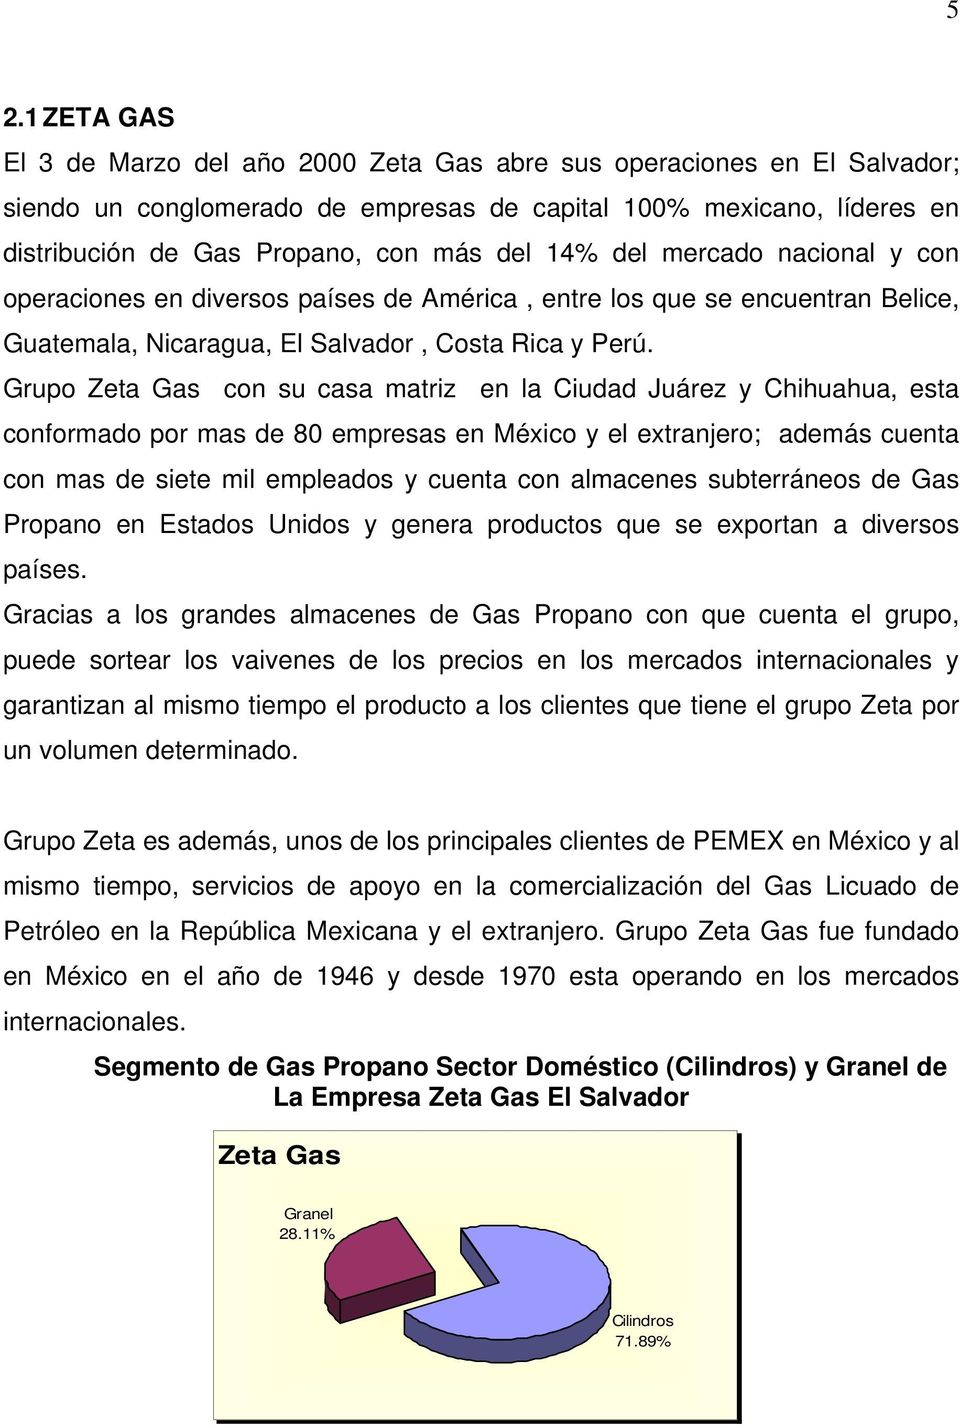 Grupo Zeta Gas con su casa matriz en la Ciudad Juárez y Chihuahua, esta conformado por mas de 80 empresas en México y el extranjero; además cuenta con mas de siete mil empleados y cuenta con